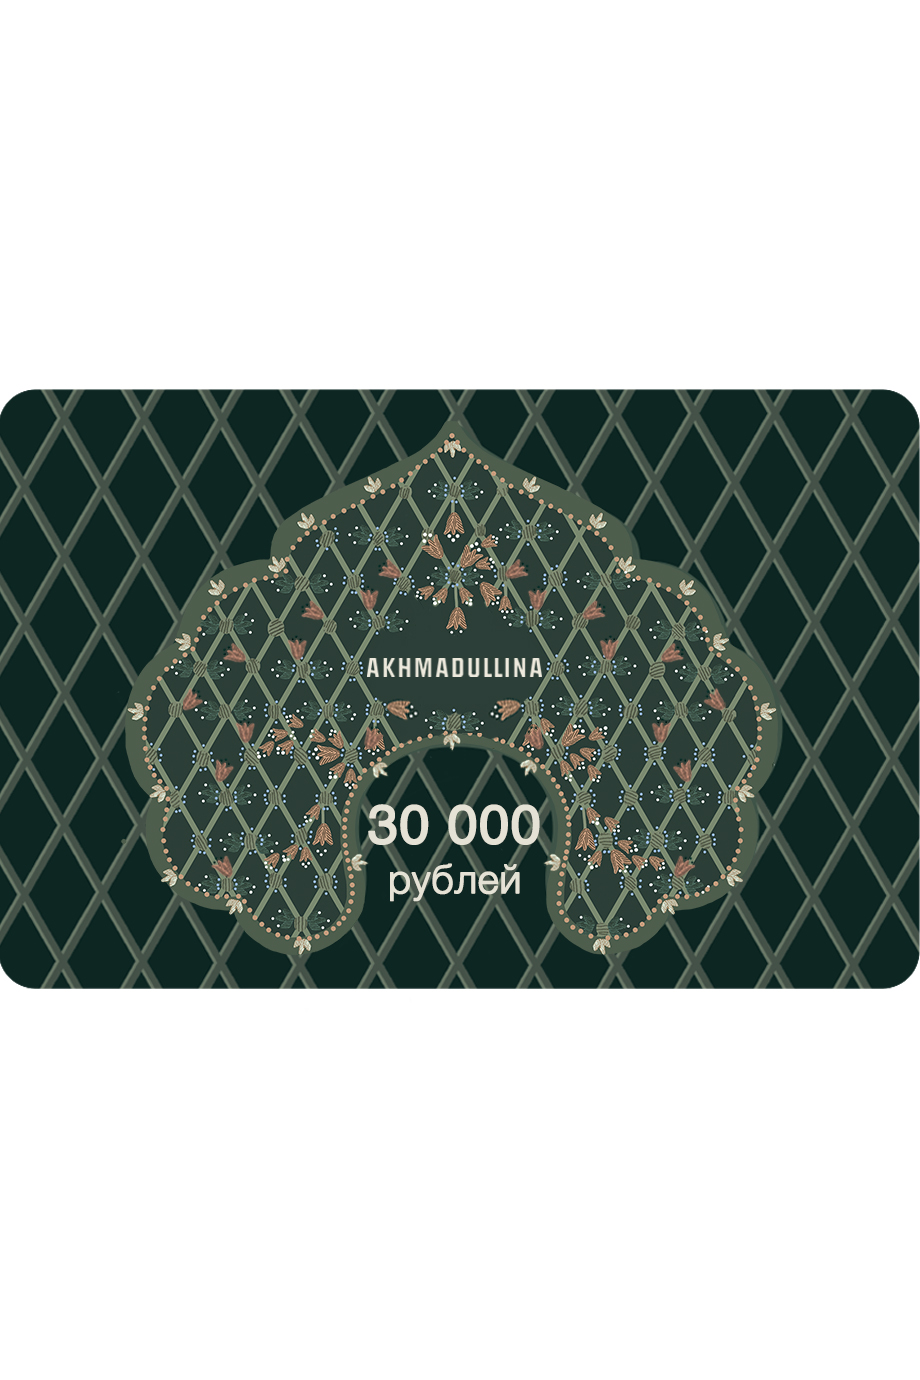 Подарочный сертификат 30 000 руб. AKHMADULLINA